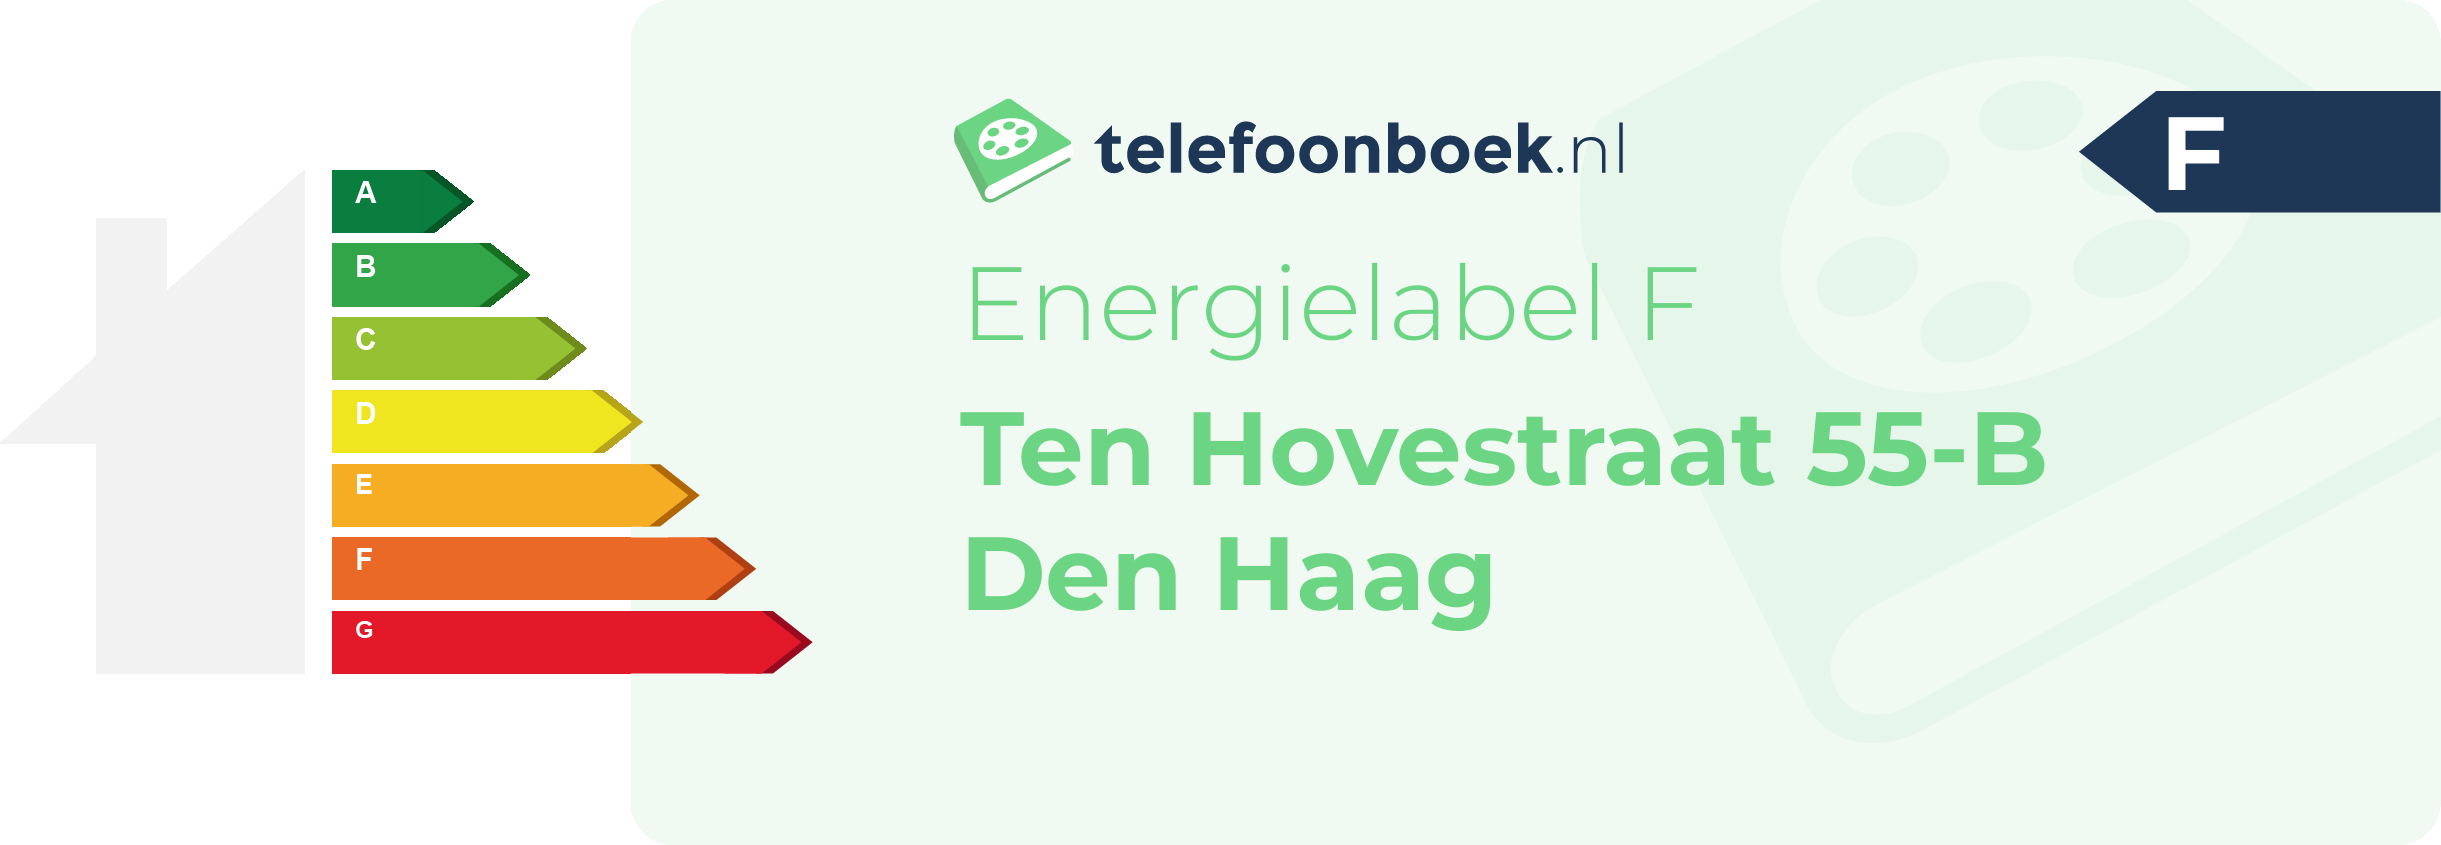 Energielabel Ten Hovestraat 55-B Den Haag